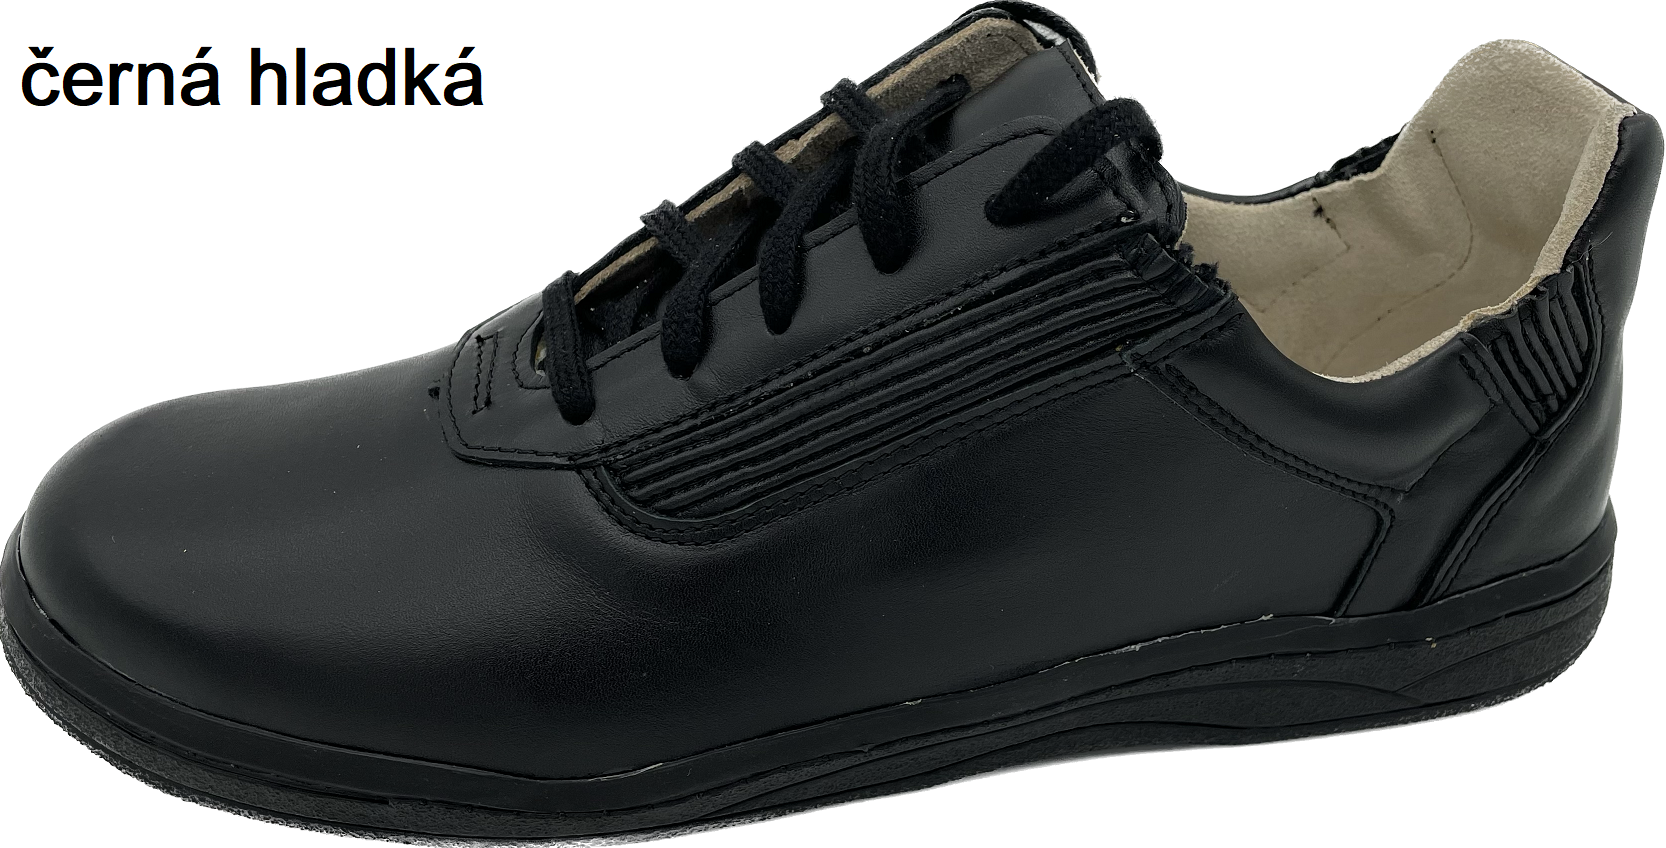 Boty Hanák Active dámská - černá podešev Barva usně: černá hladká, Velikosti obuvi: 39